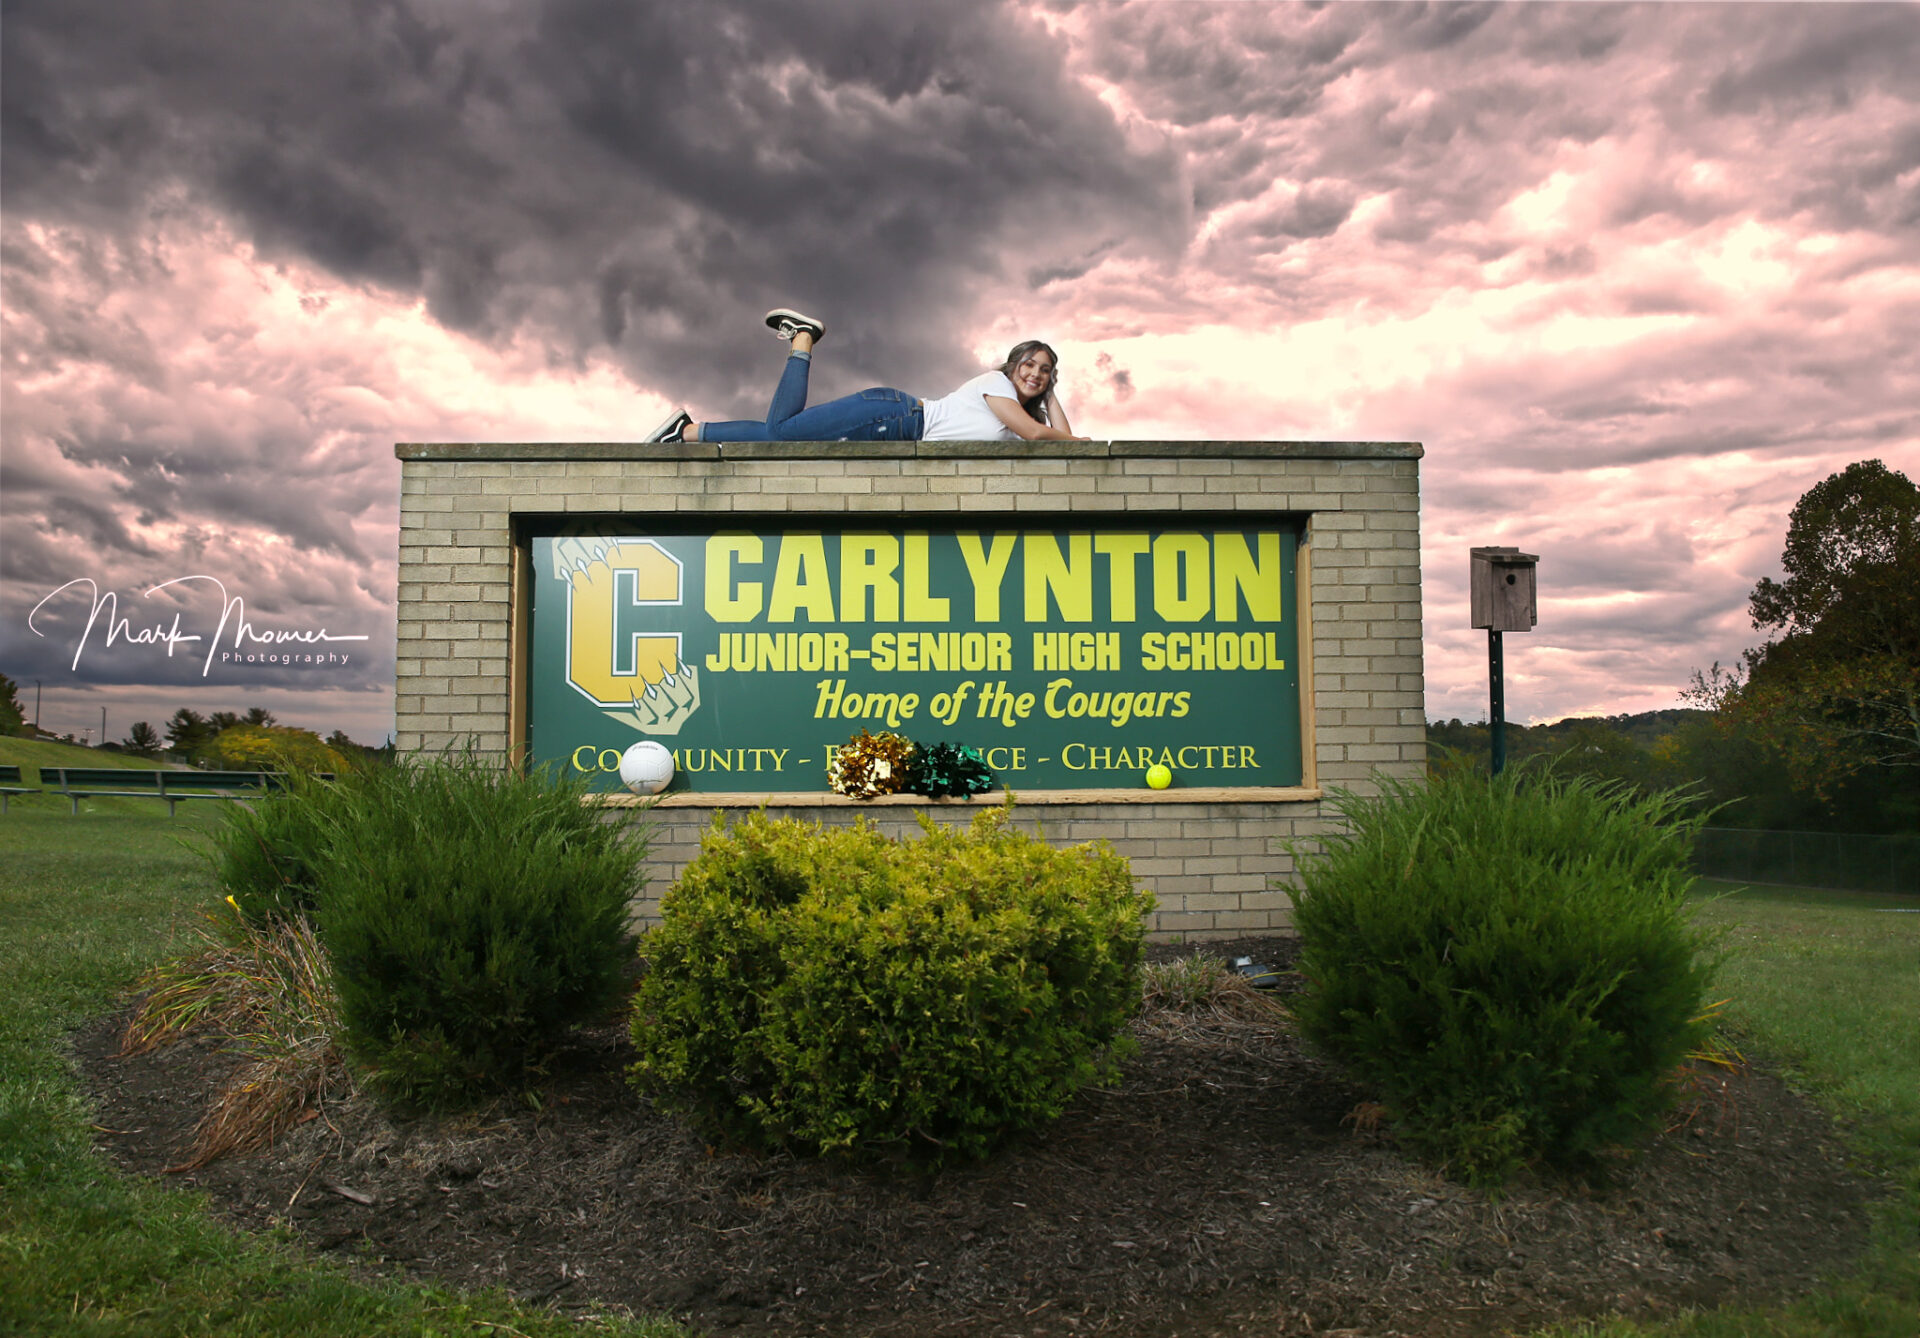 Carlynton high school senior portrait with a dramatic sky